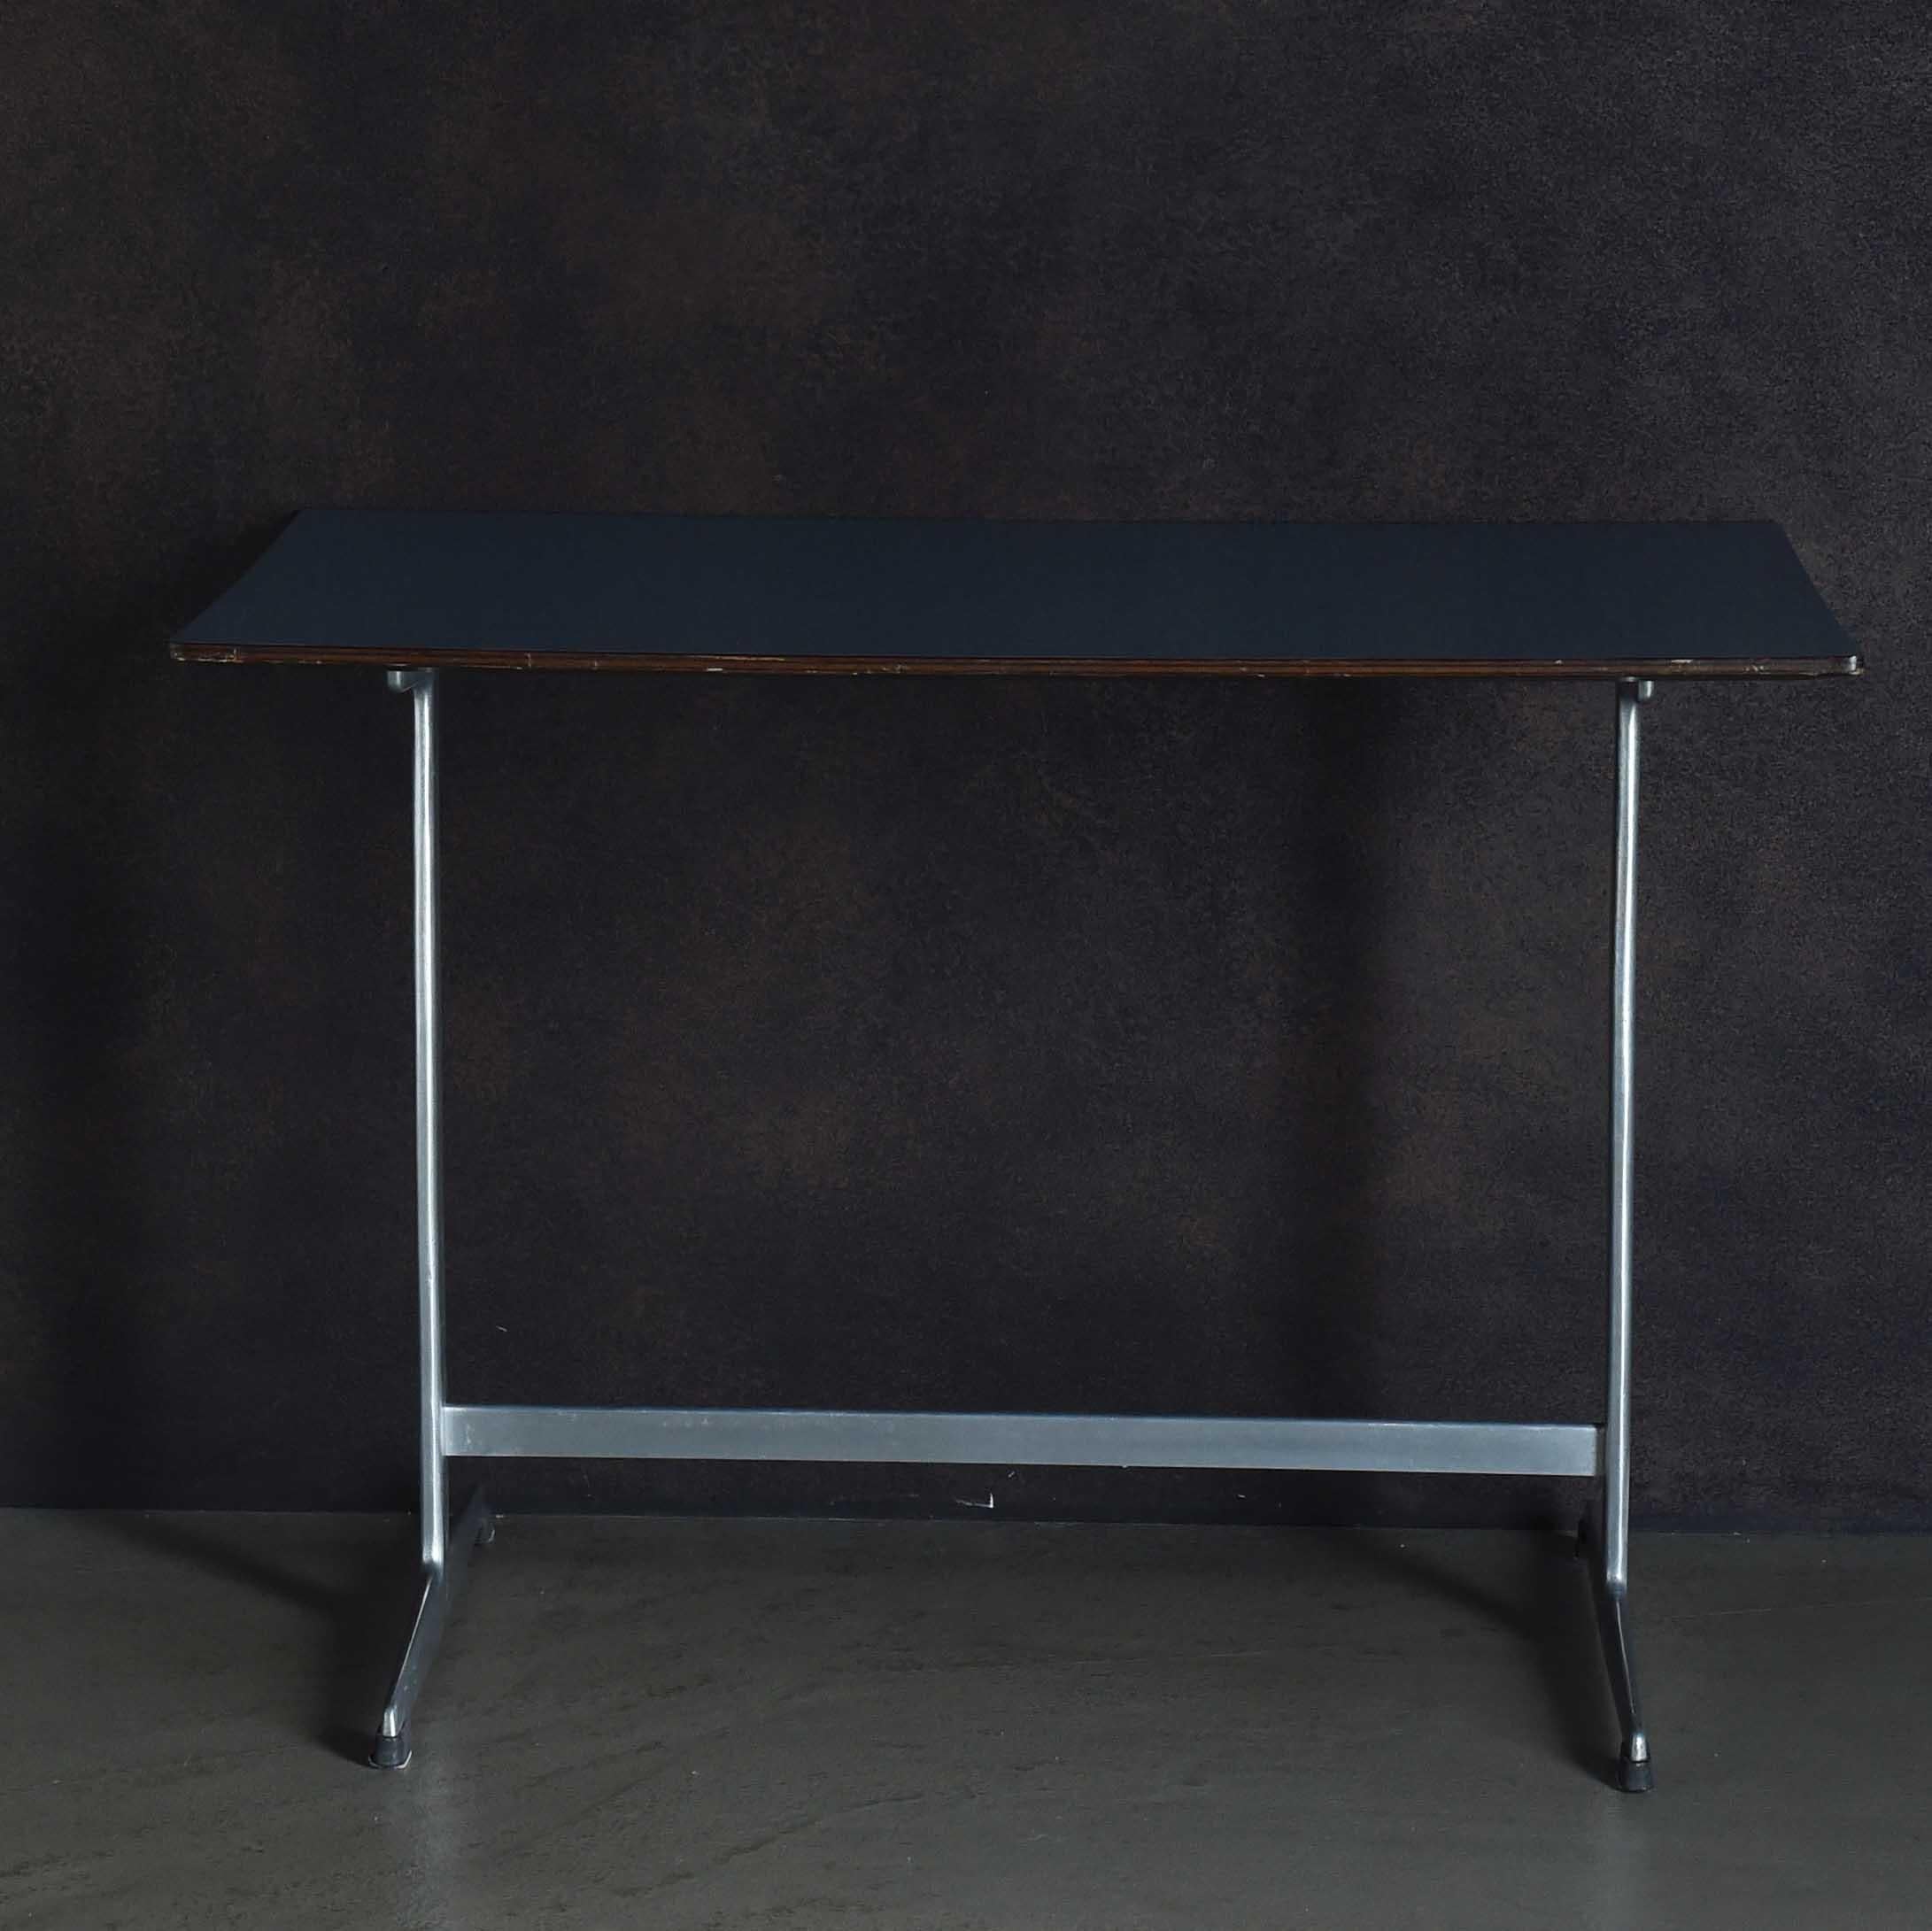 Das Shaker Board (Tisch) hat ein schlankes Erscheinungsbild, was möglicherweise auf seine Stahlbeine zurückzuführen ist. Dieser Mitteltisch mit rechteckiger Platte und Shaker-Fuß wurde von Arne Jacobsen in Zusammenarbeit mit Poul Henningsen und